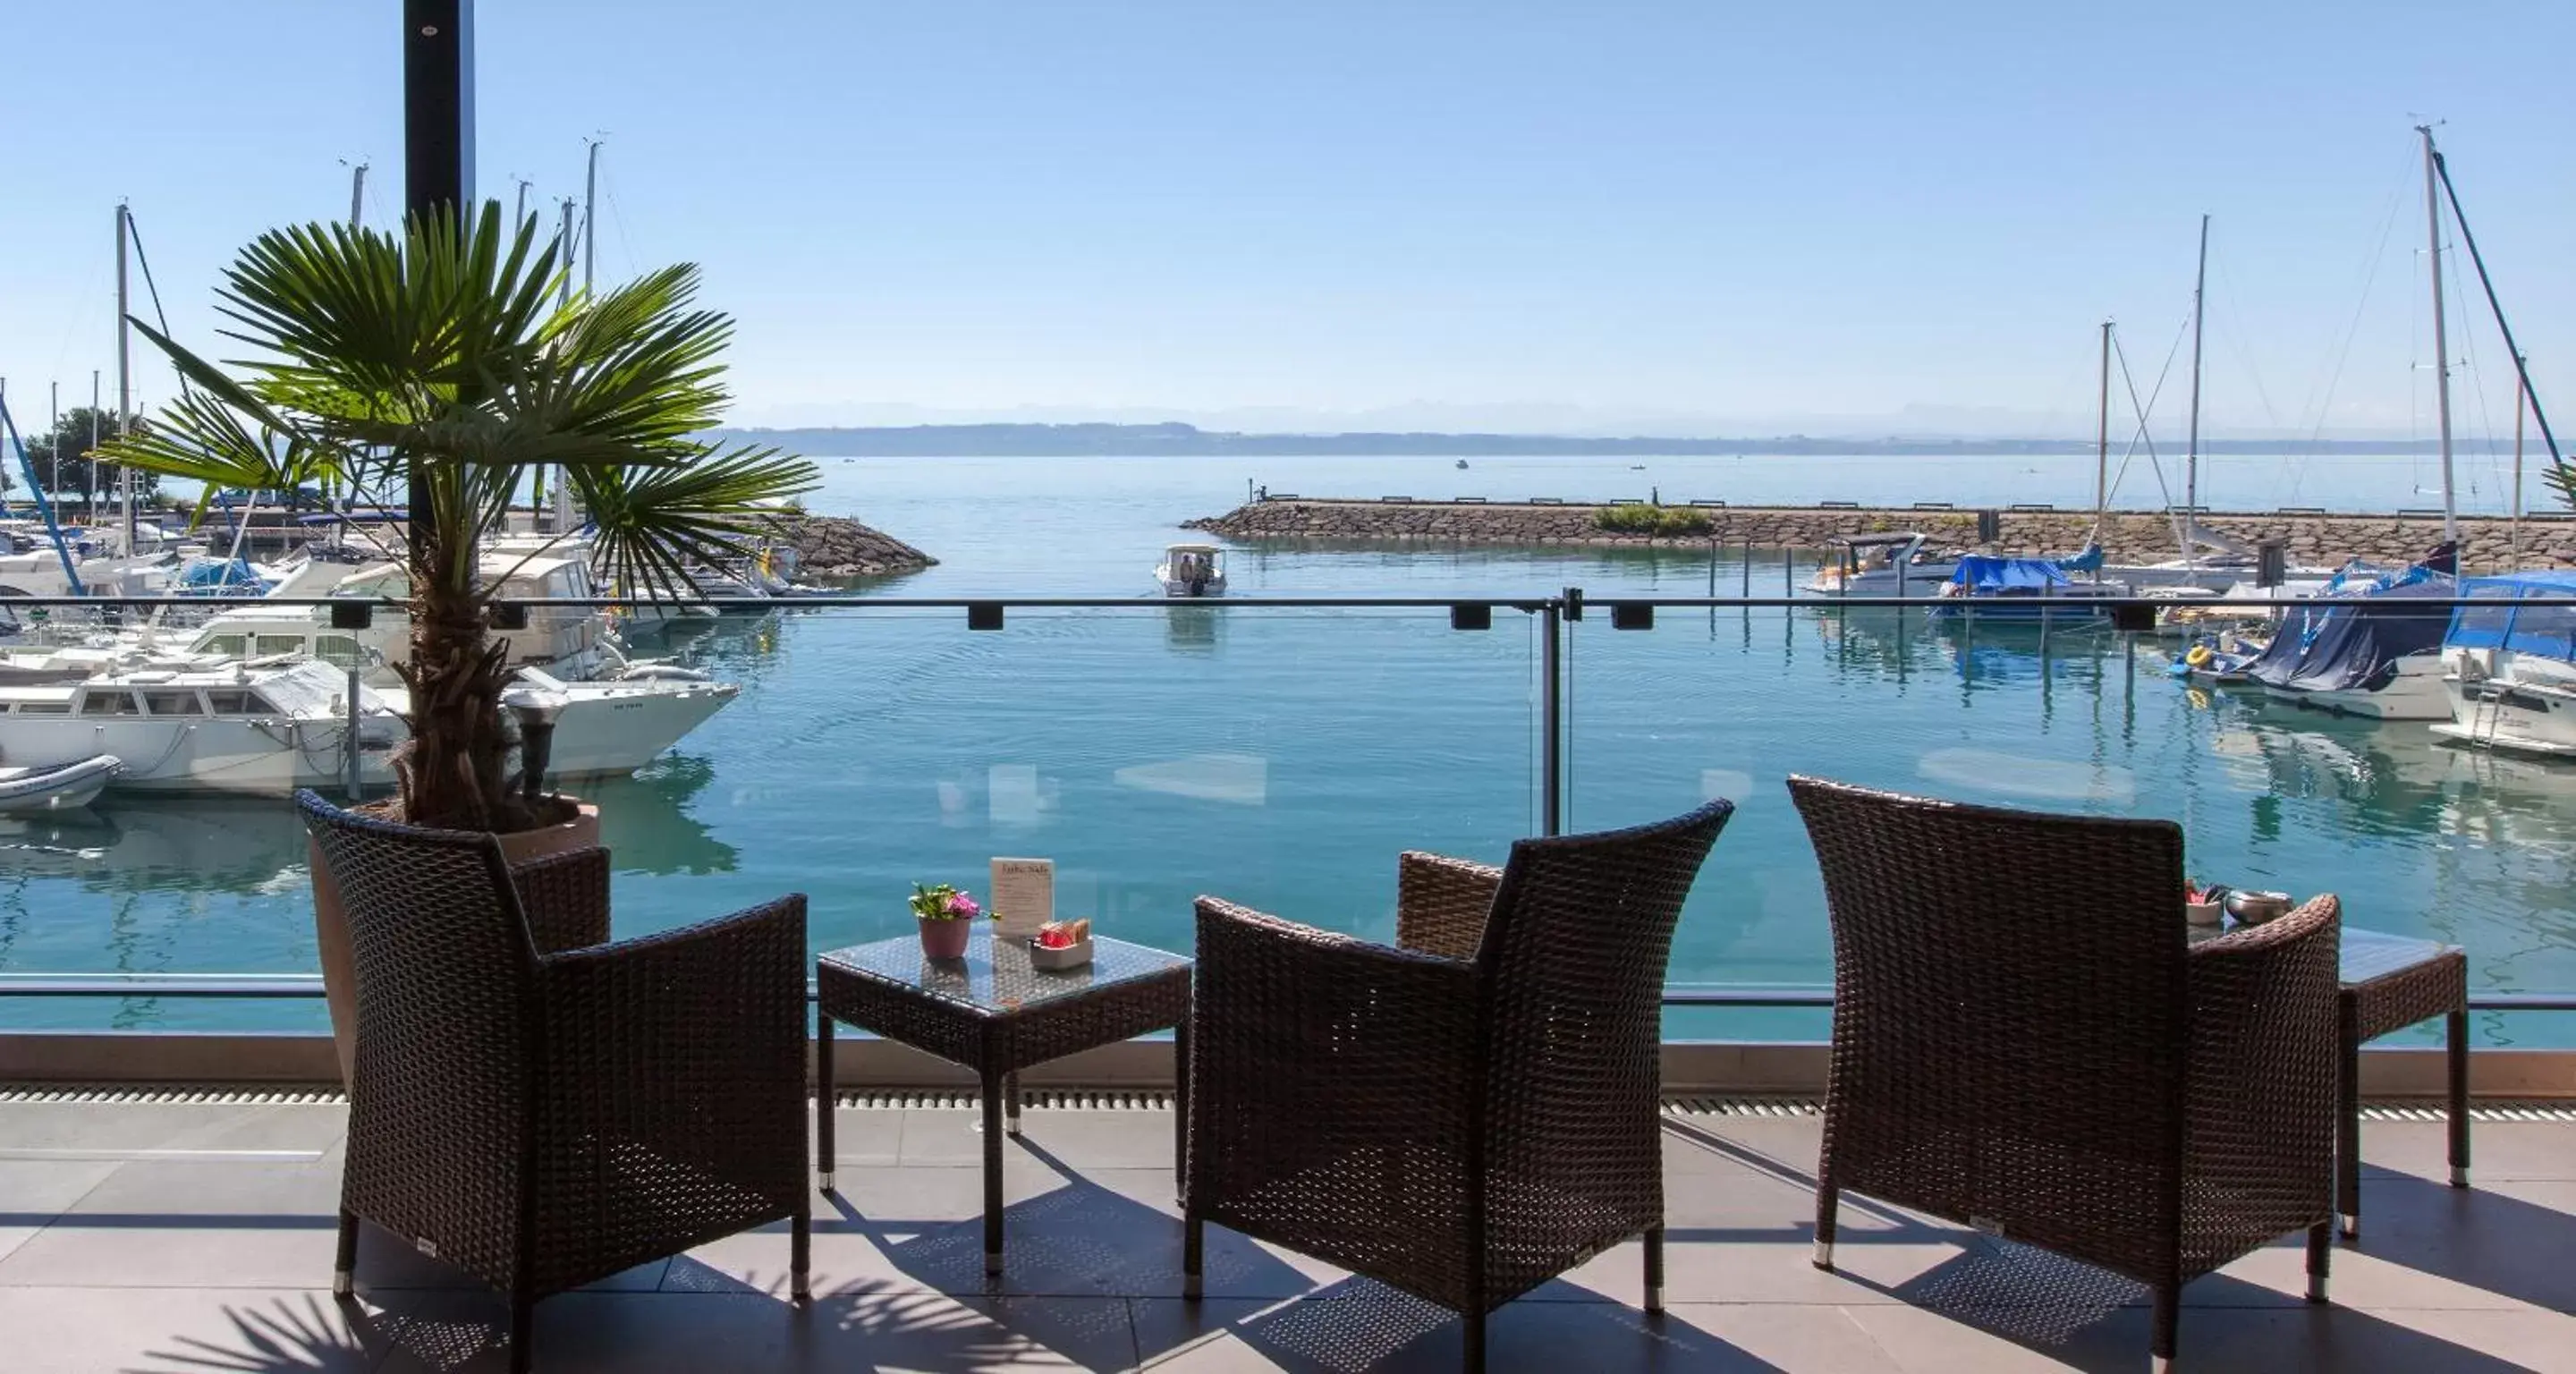 Balcony/Terrace, Swimming Pool in Best Western Premier Hotel Beaulac